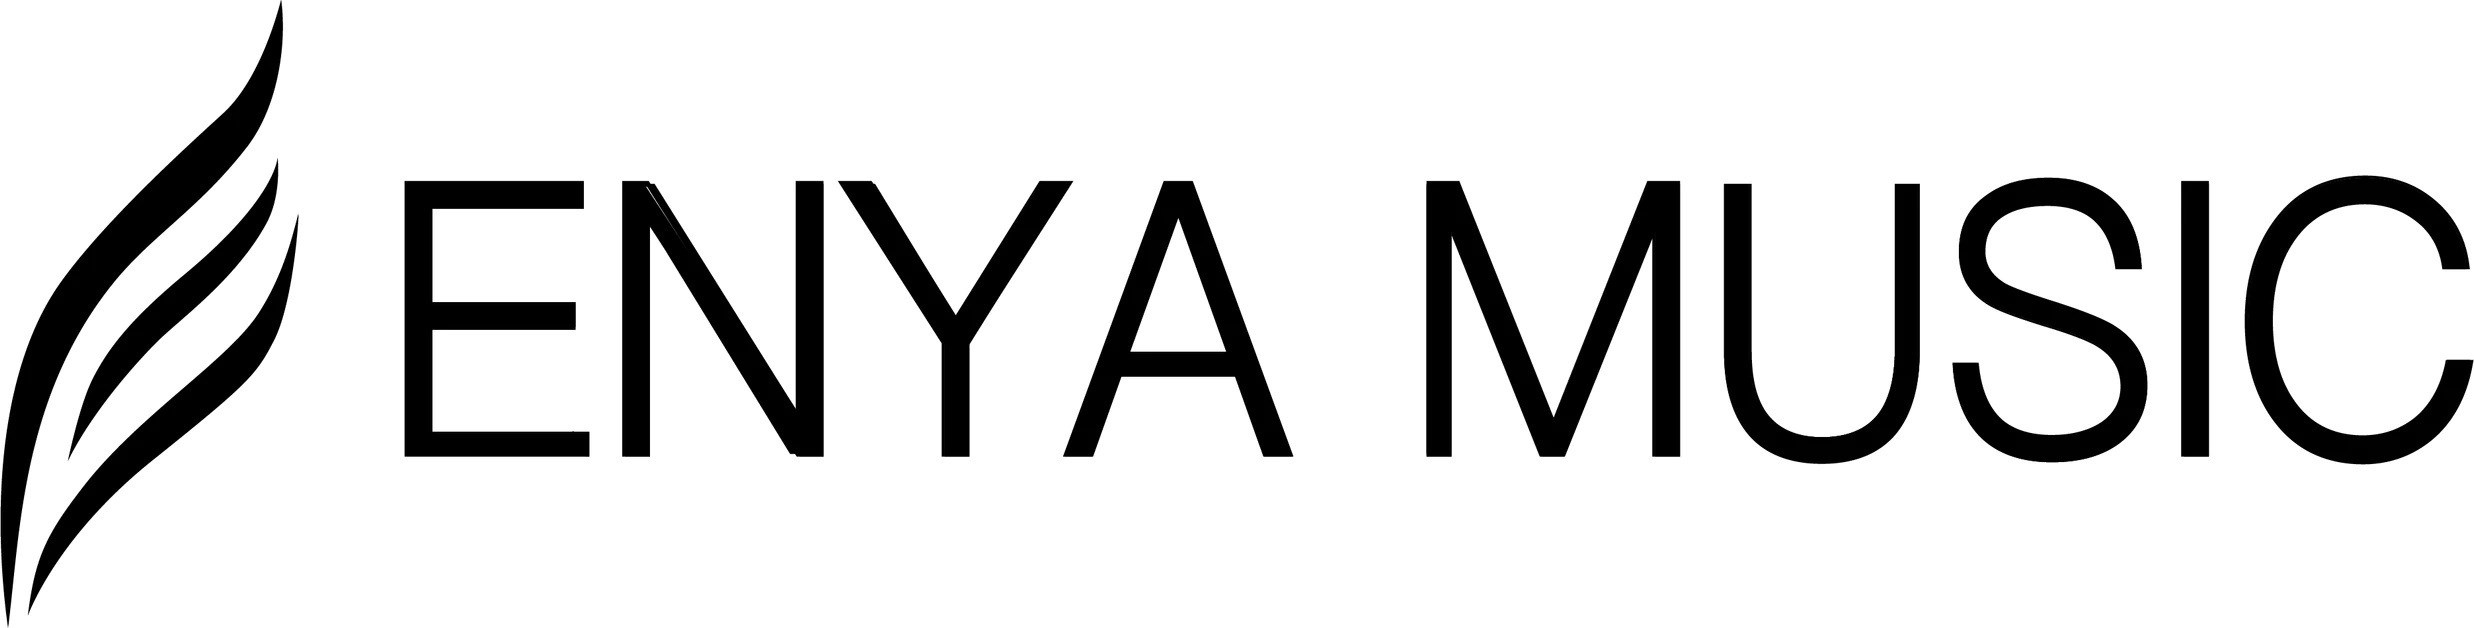 О компании Enya